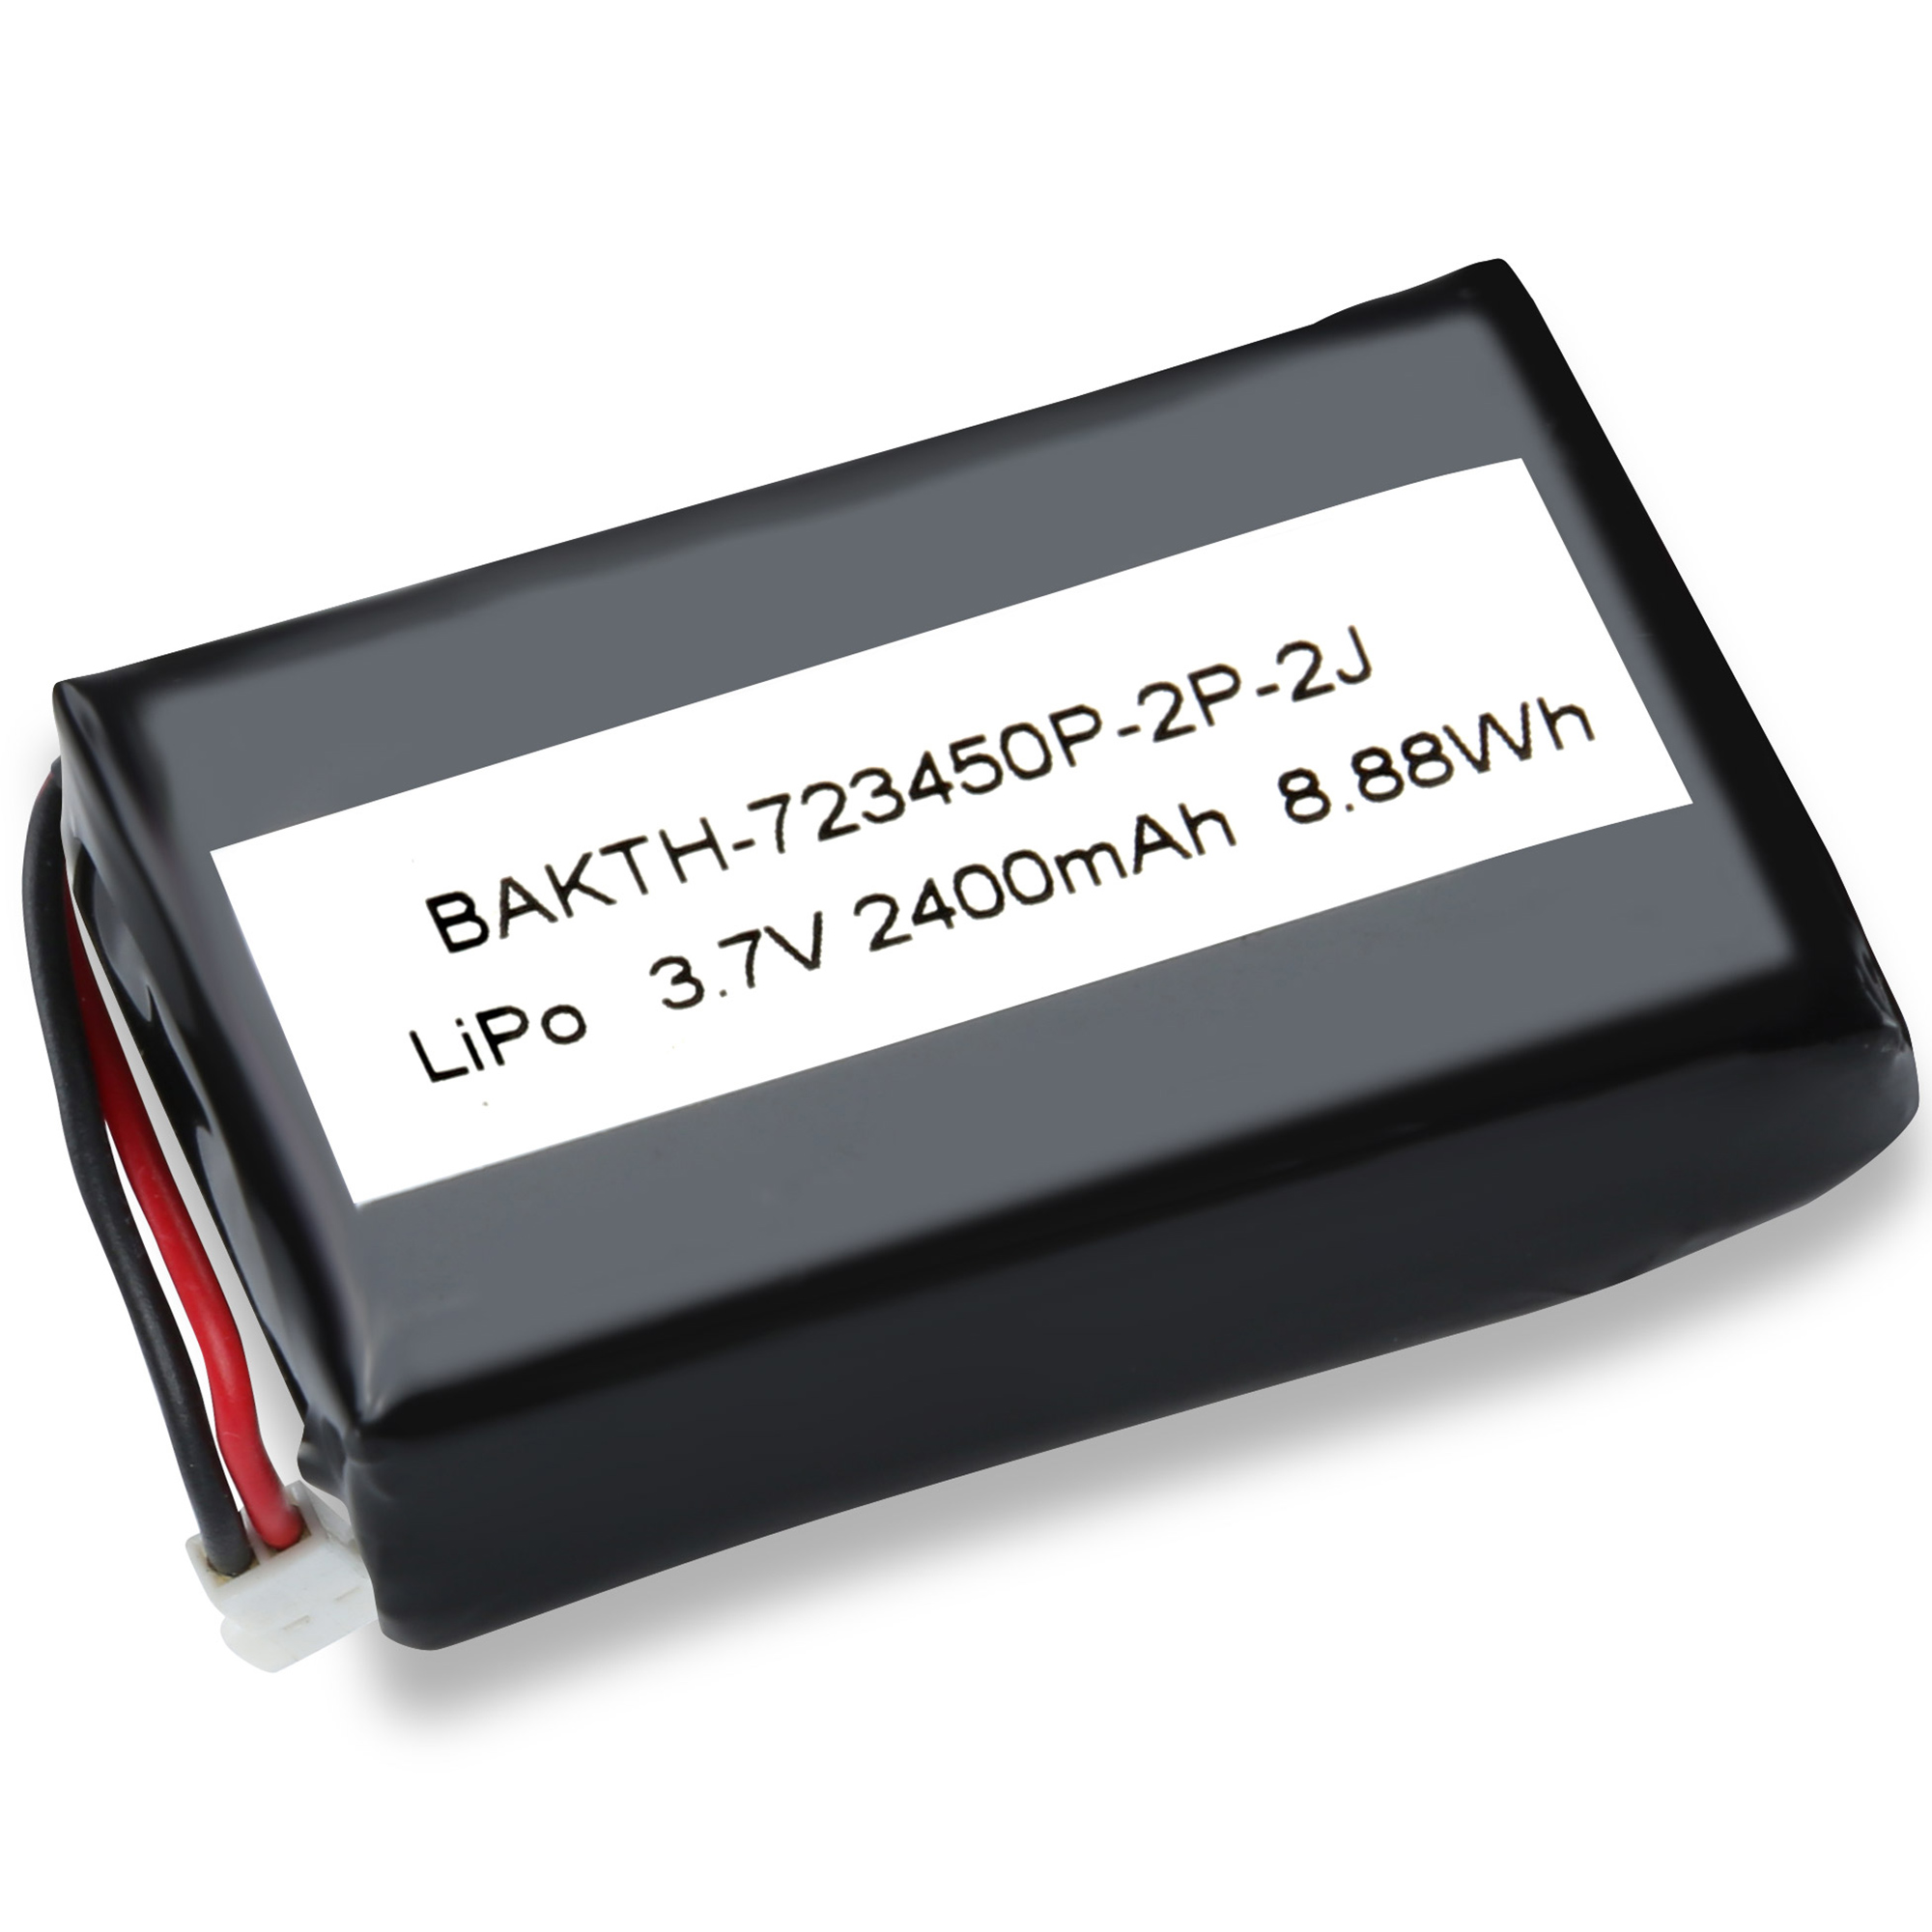 BAKTH-723450P-2P-3J RECHARGAGET LITHIUM POLYMER BATTERIE 3,7 V 2400mAh Batterie Pack